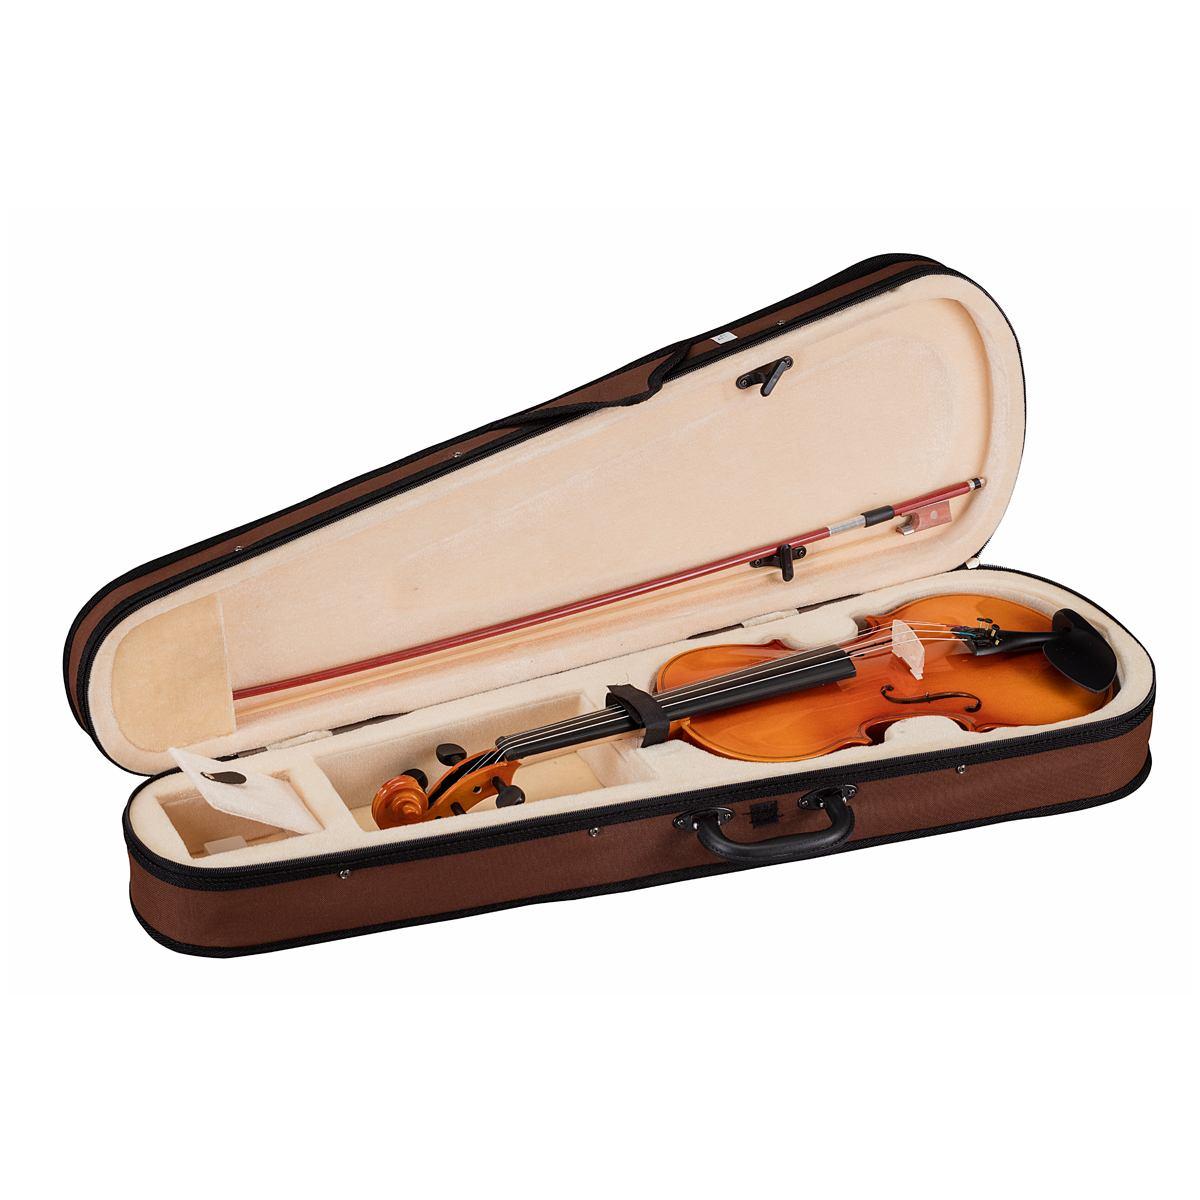 Soundsation violino 1/8 virtuoso primo completo di astuccio e archetto